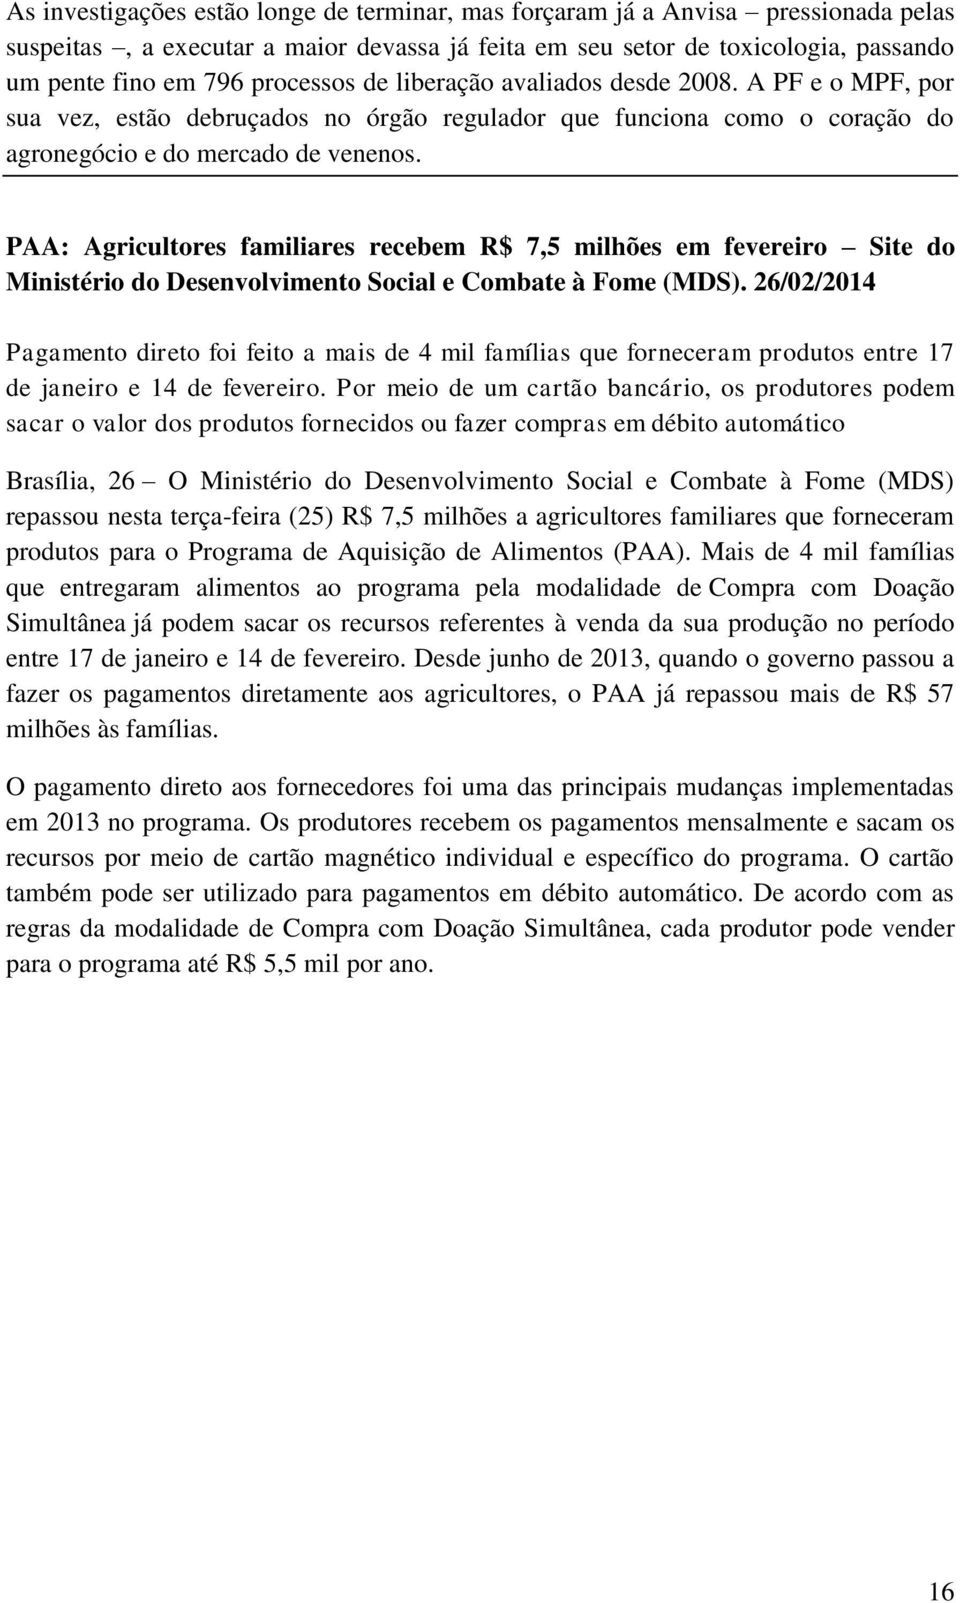 PAA: Agricultores familiares recebem R$ 7,5 milhões em fevereiro Site do Ministério do Desenvolvimento Social e Combate à Fome (MDS).